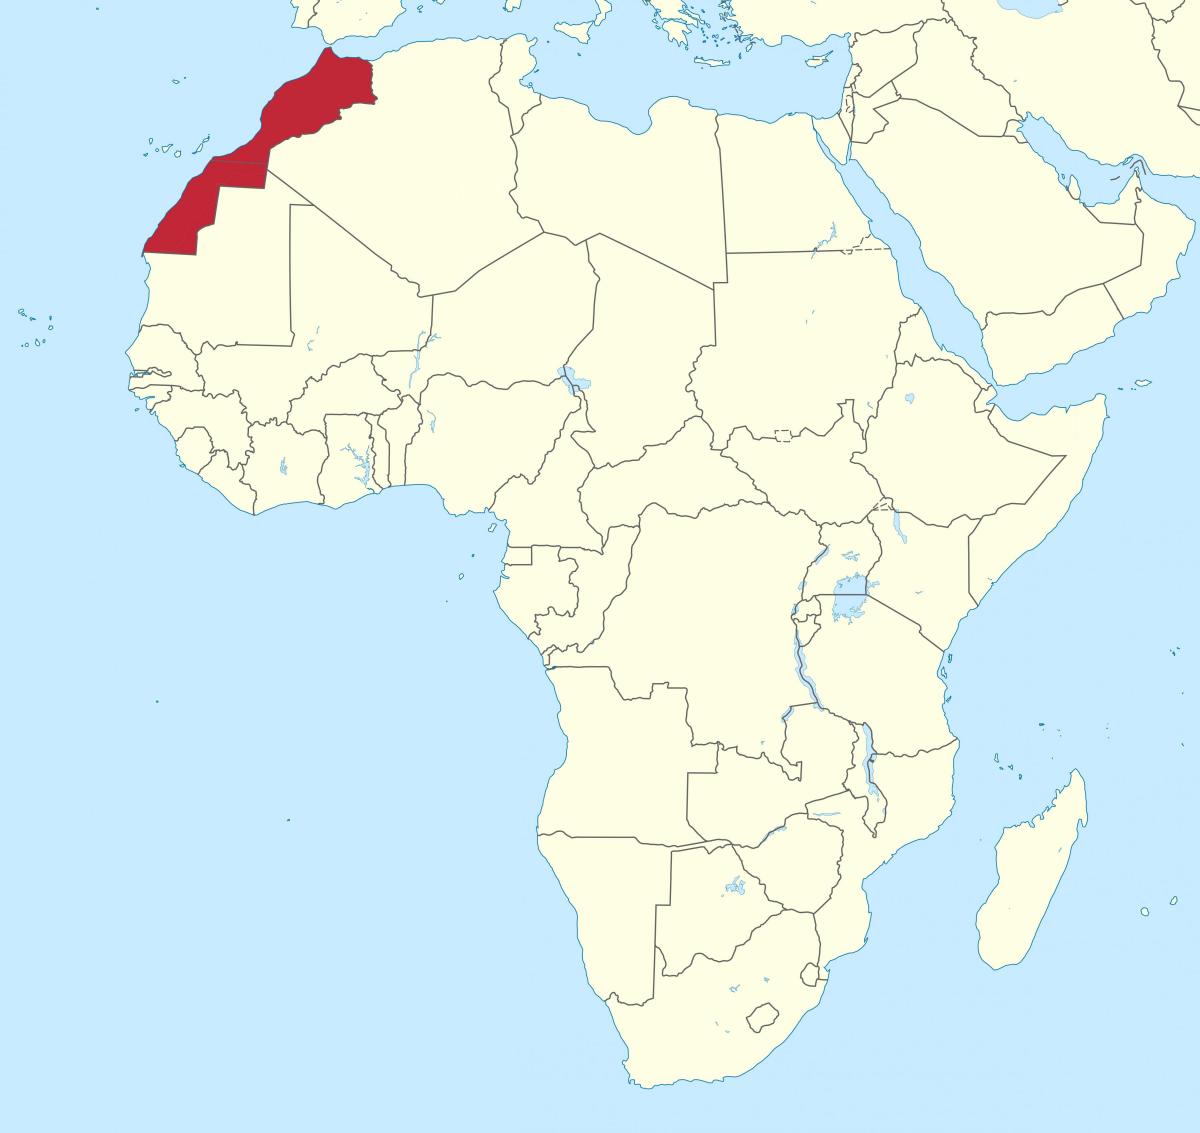 Ubicación de Marruecos en el mapa de África